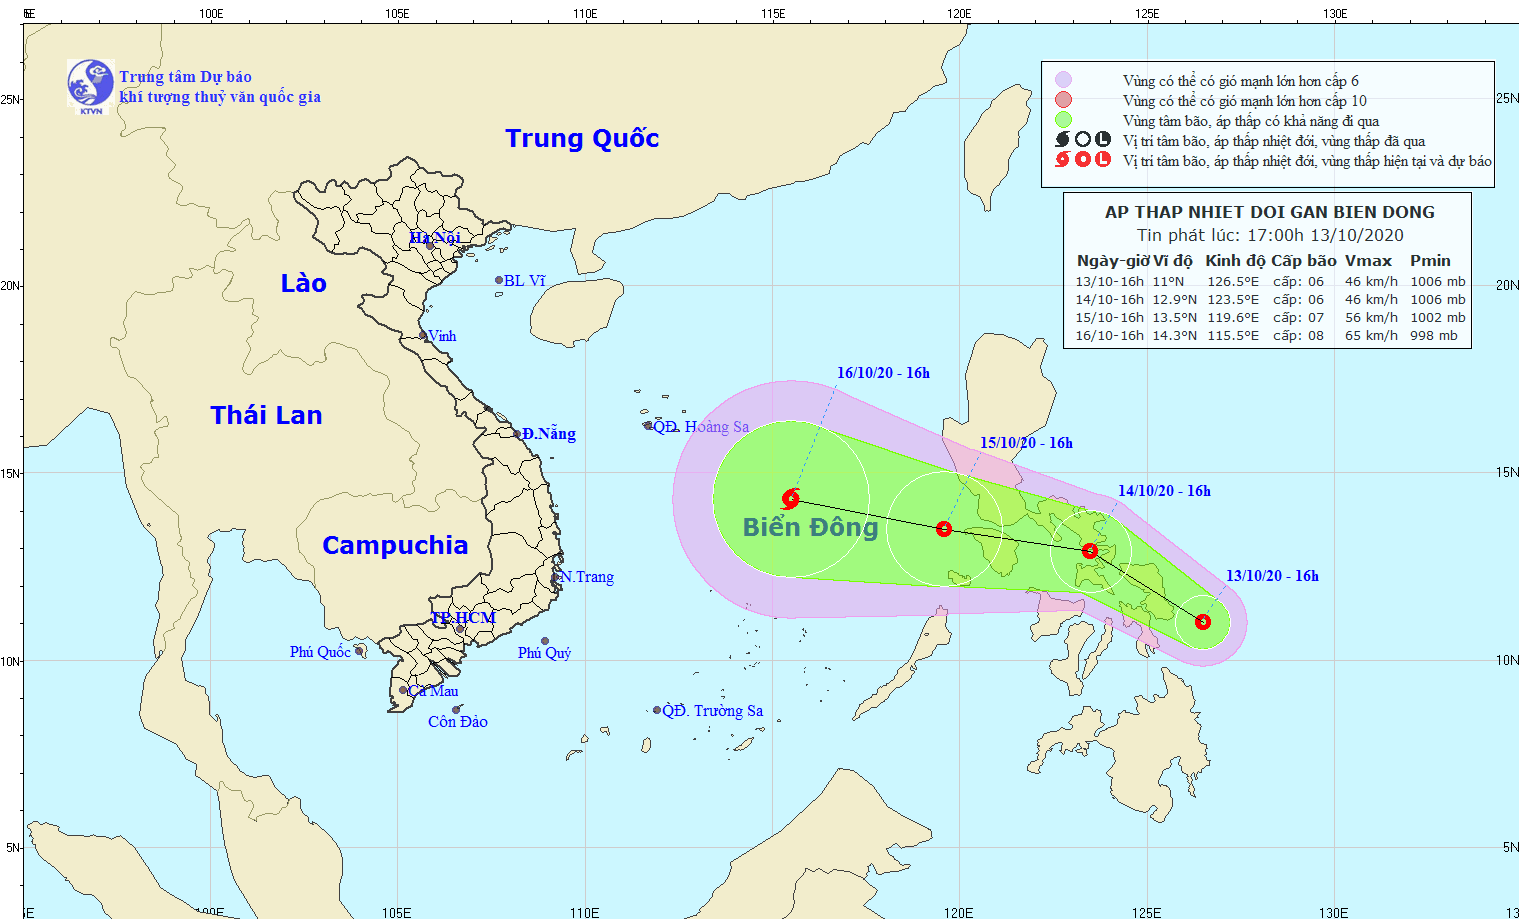 Hiện tại đã xuất hiện ATNĐ tại khu vực ngoài khơi Philippines và sau khi cơn bão số 7 đi vào bờ nước ta thì khả năng ATNĐ sẽ mạnh lên thành bão số 8 và đi vào biển Đông